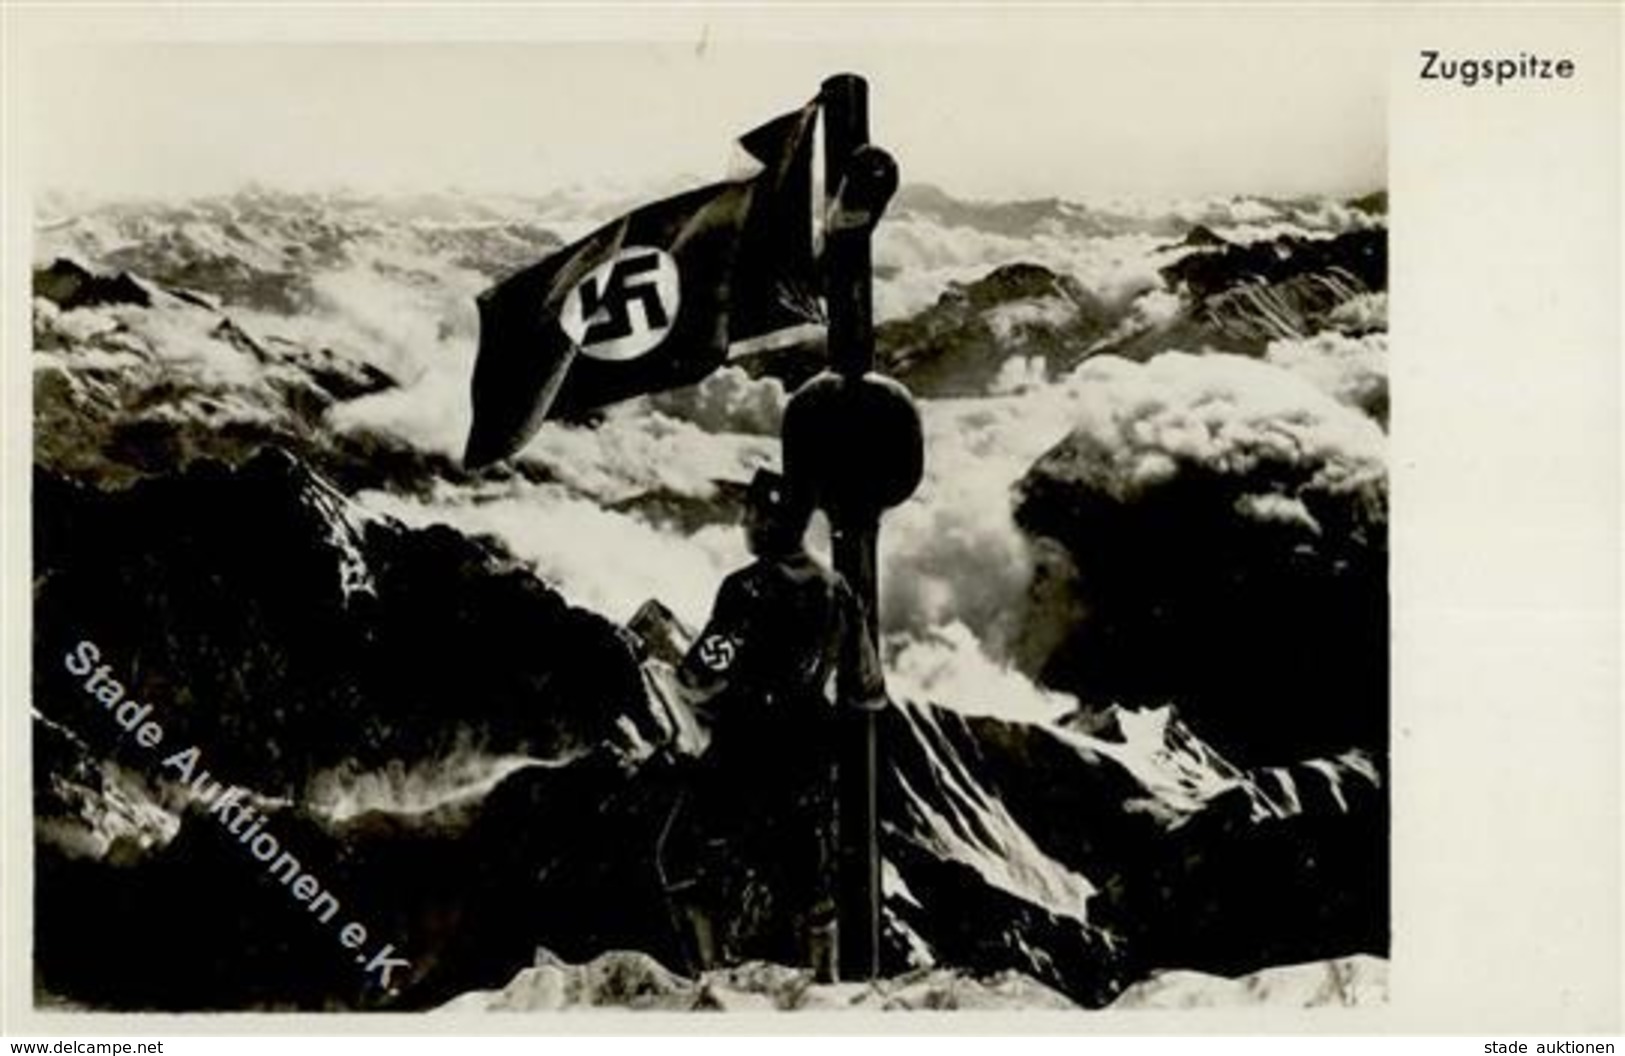 ZUGSPITZE WK II - Hissing D. Hakenkreuzfahne Auf D. Zugspitze 21.März 1933 I - Guerra 1939-45